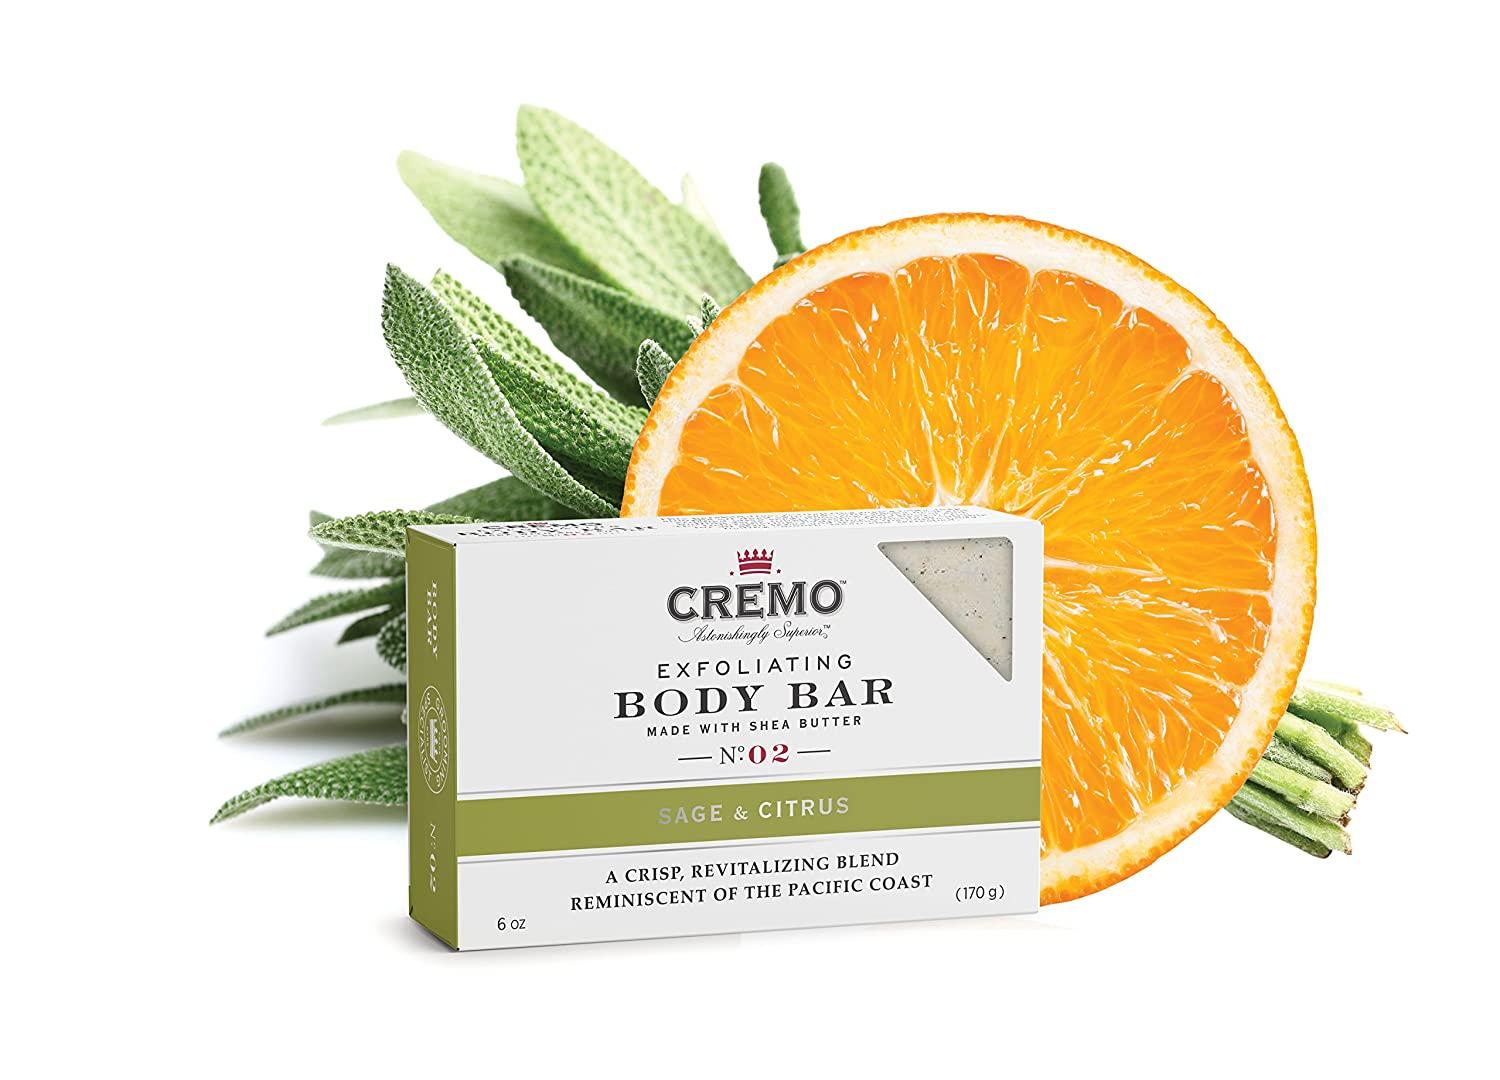 Cremo Exfoliating Body Bar, No. 02, Sage & Citrus, 6 oz (170 g)